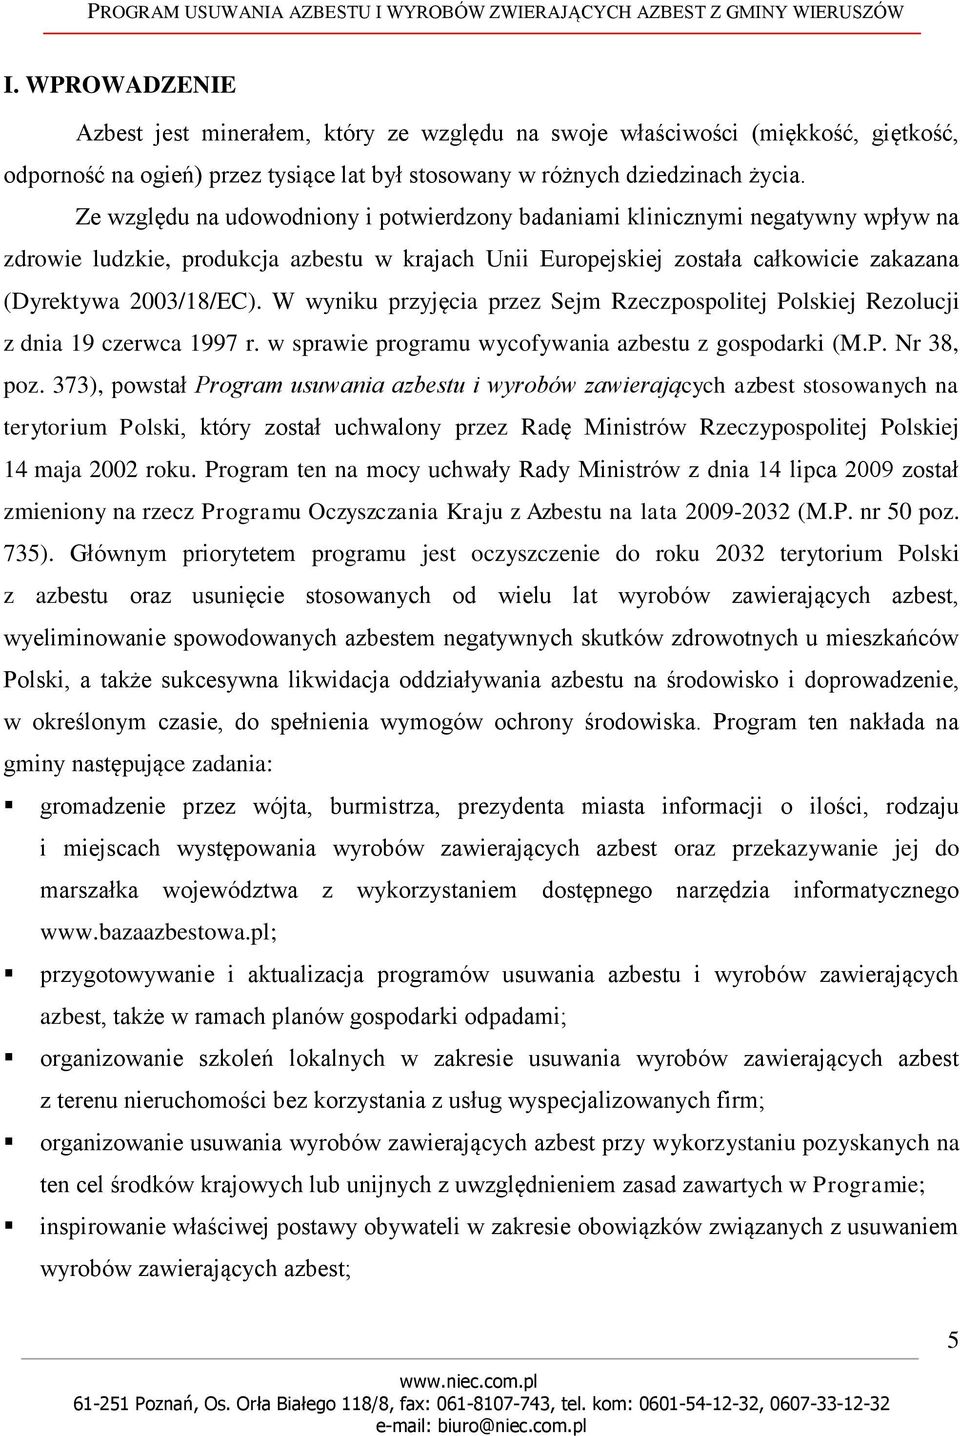 W wyniku przyjęcia przez Sejm Rzeczpospolitej Polskiej Rezolucji z dnia 19 czerwca 1997 r. w sprawie programu wycofywania azbestu z gospodarki (M.P. Nr 38, poz.